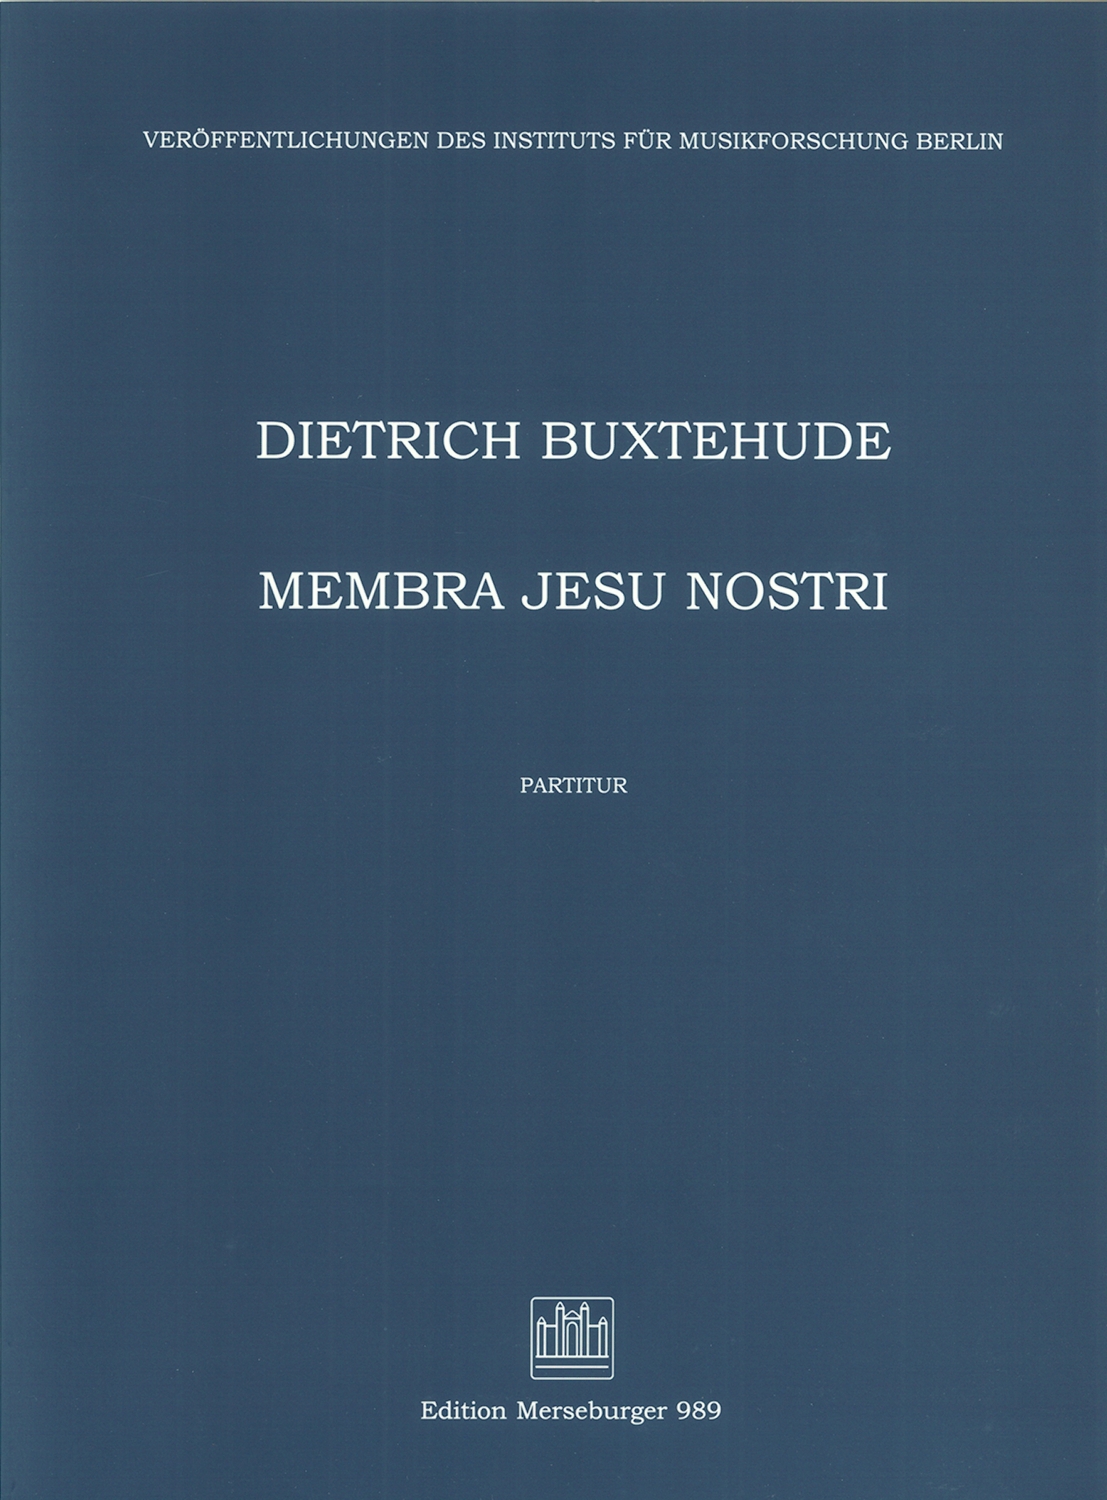 dietrich-buxtehude-membra-jesu-nostri-buxwv-75-gem_0003.JPG